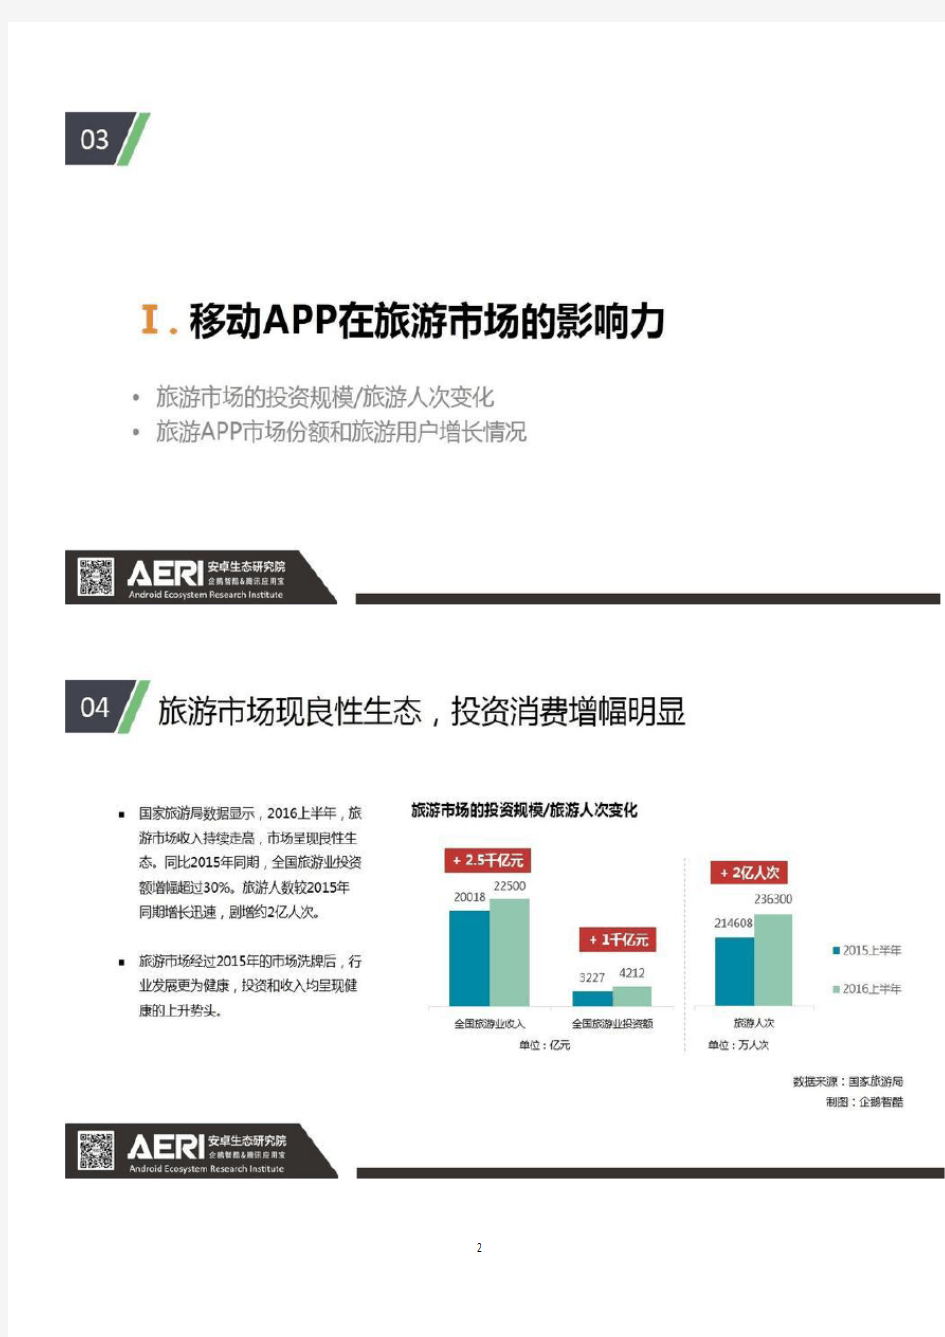 2017年中国旅游APP市场数据报告分析